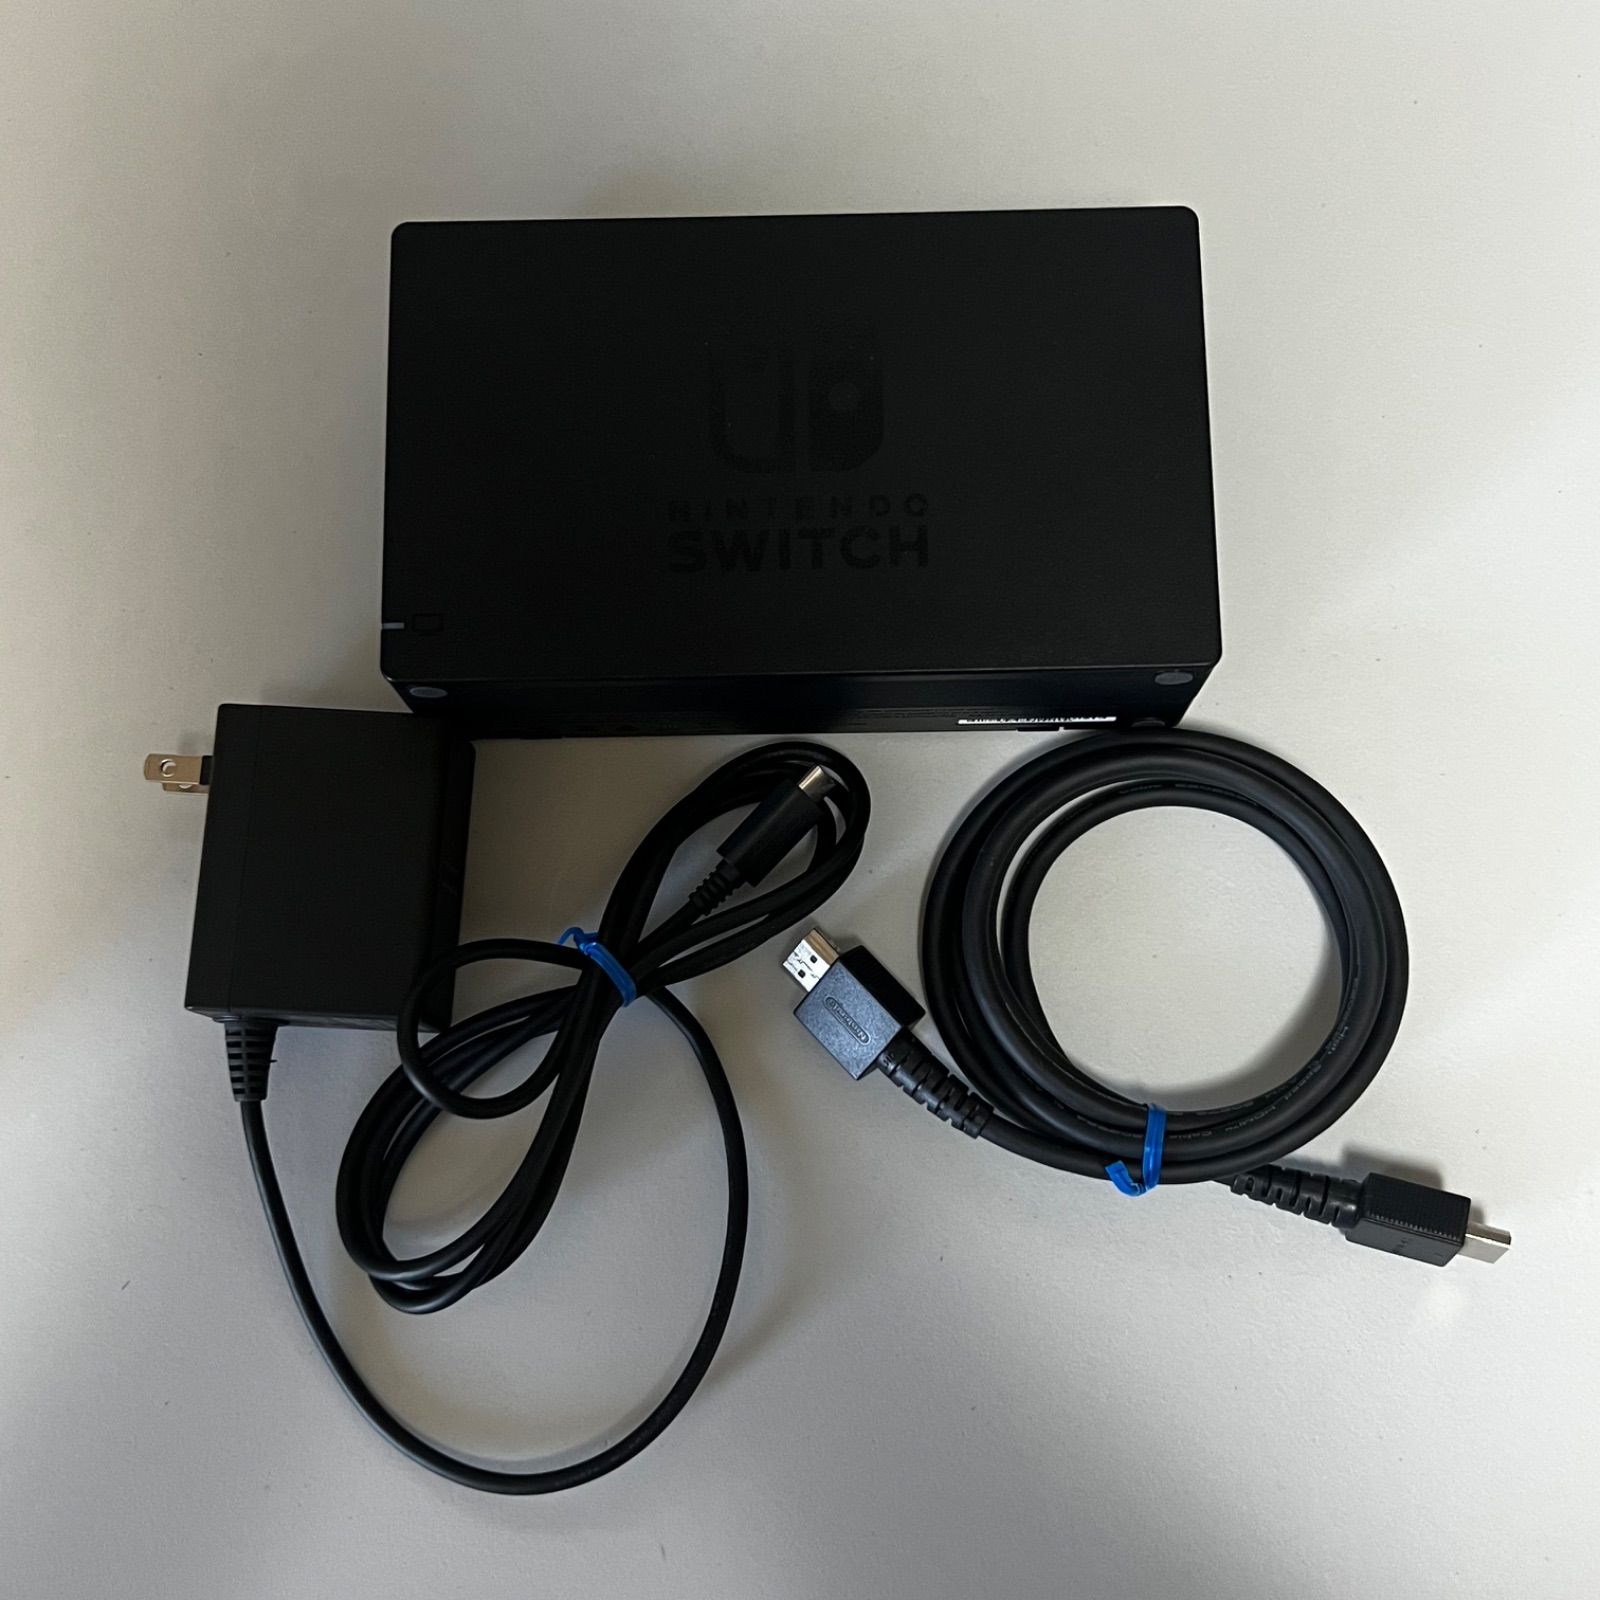 Switch 任天堂 純正 ドックセット ACアダプター HDMIケーブル